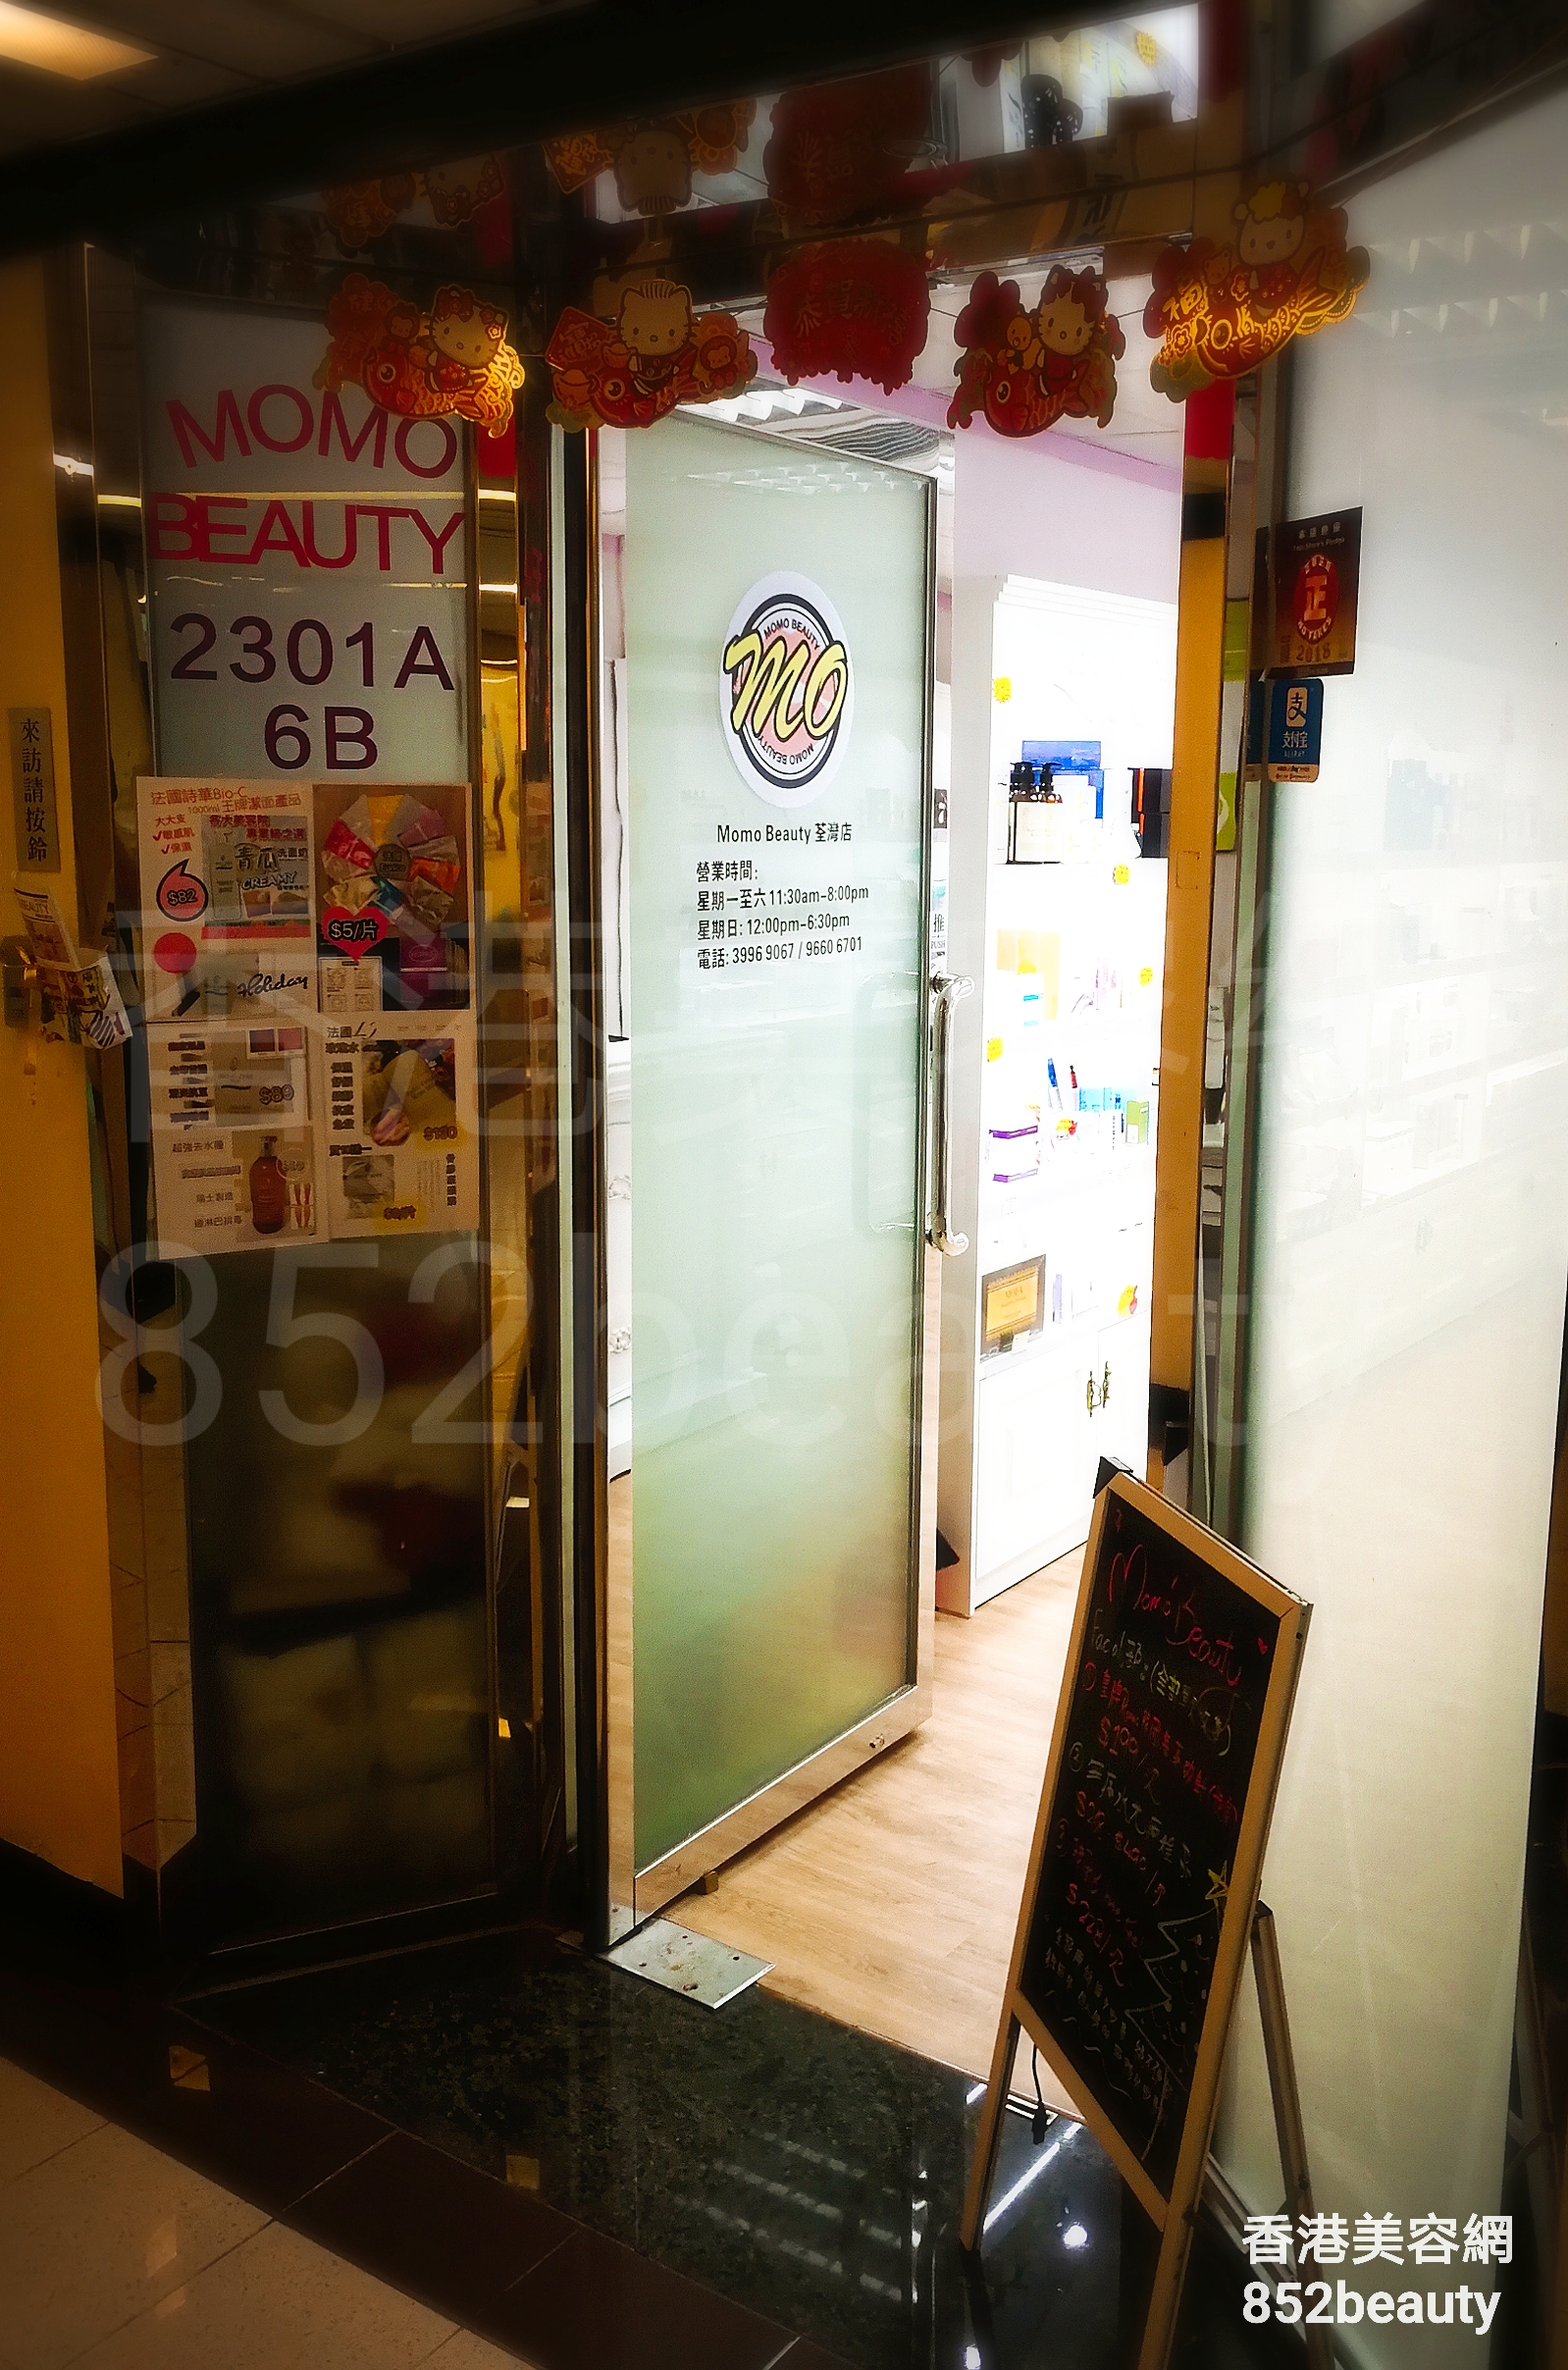 香港美容網 Hong Kong Beauty Salon 美容院 / 美容師: MOMO BEAUTY 荃灣店